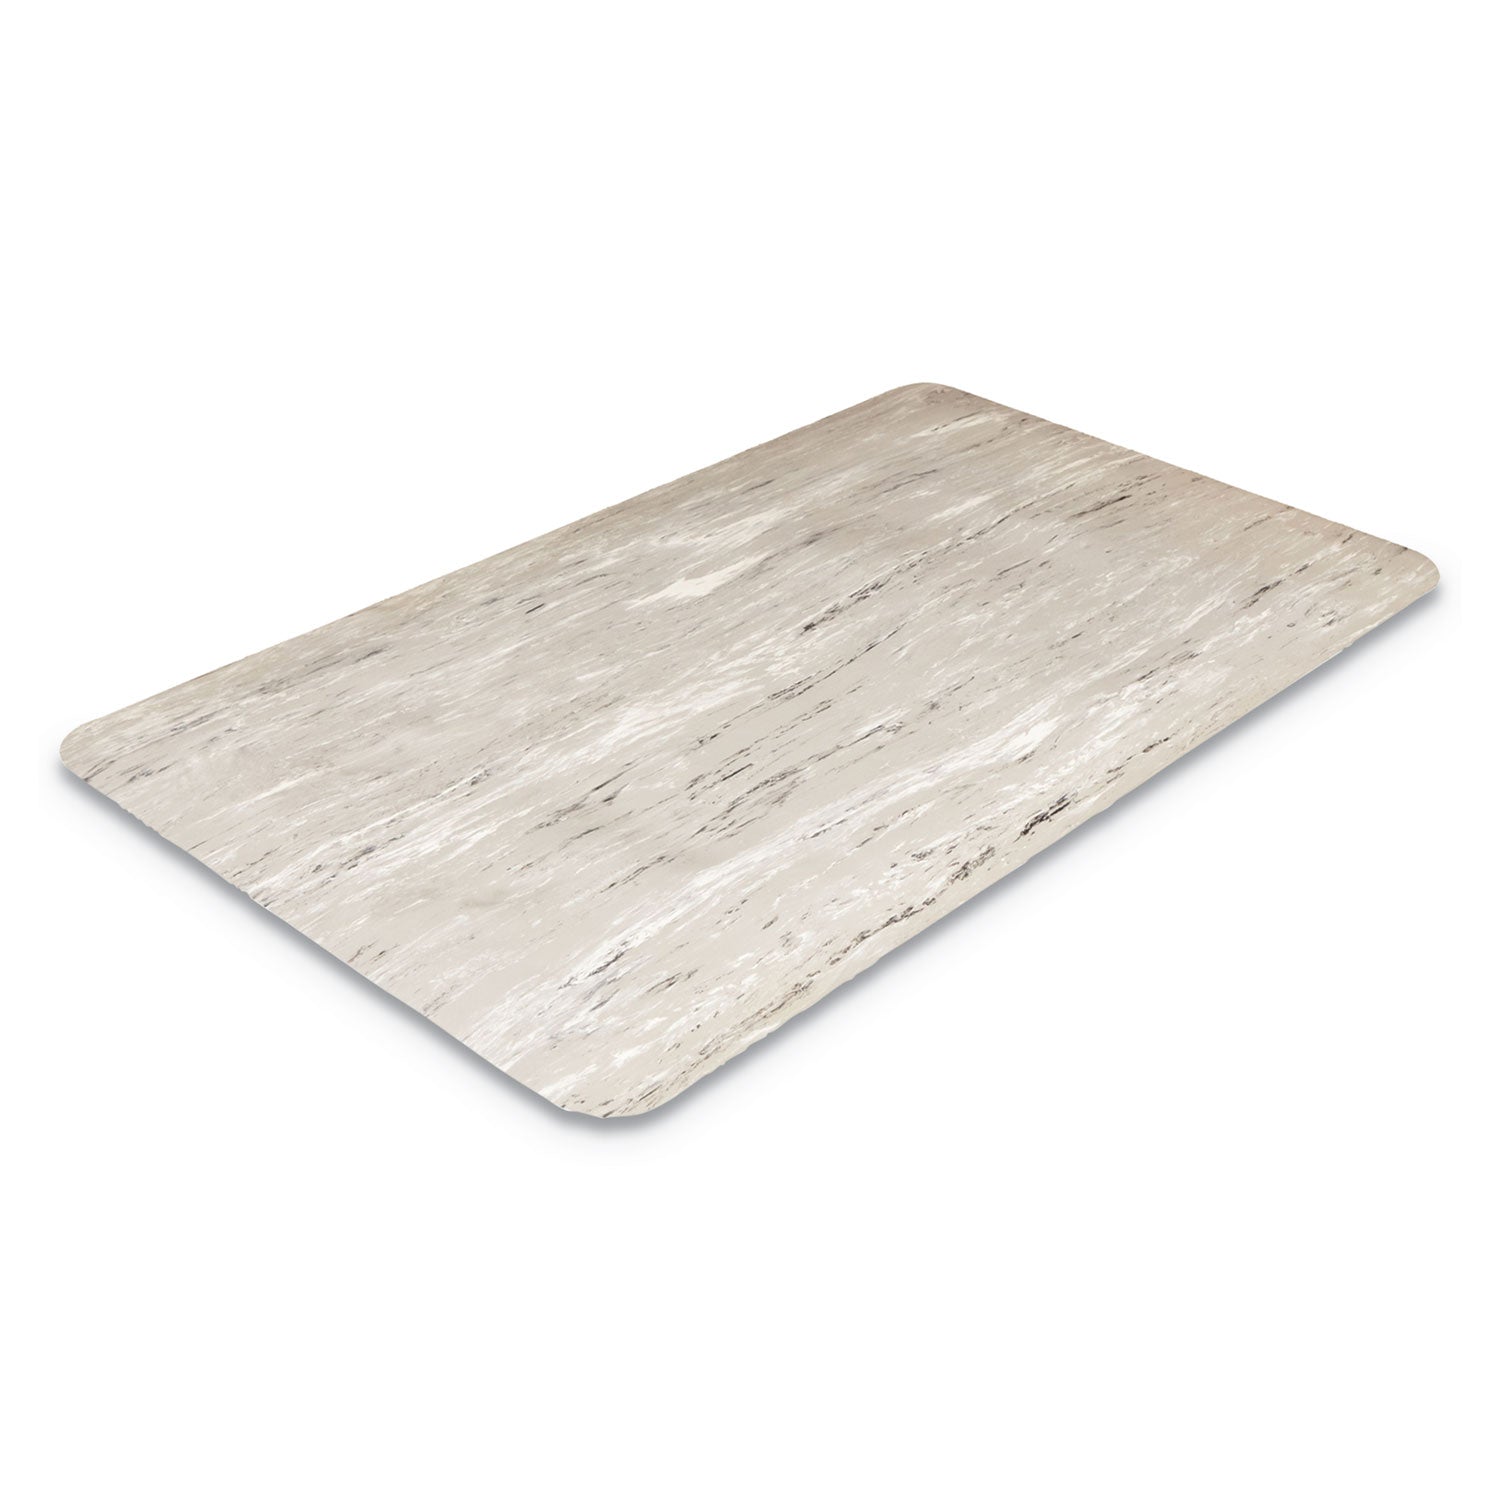 Cushion-Step Marbleized Rubber Mat, 36 x 72, Gray - 